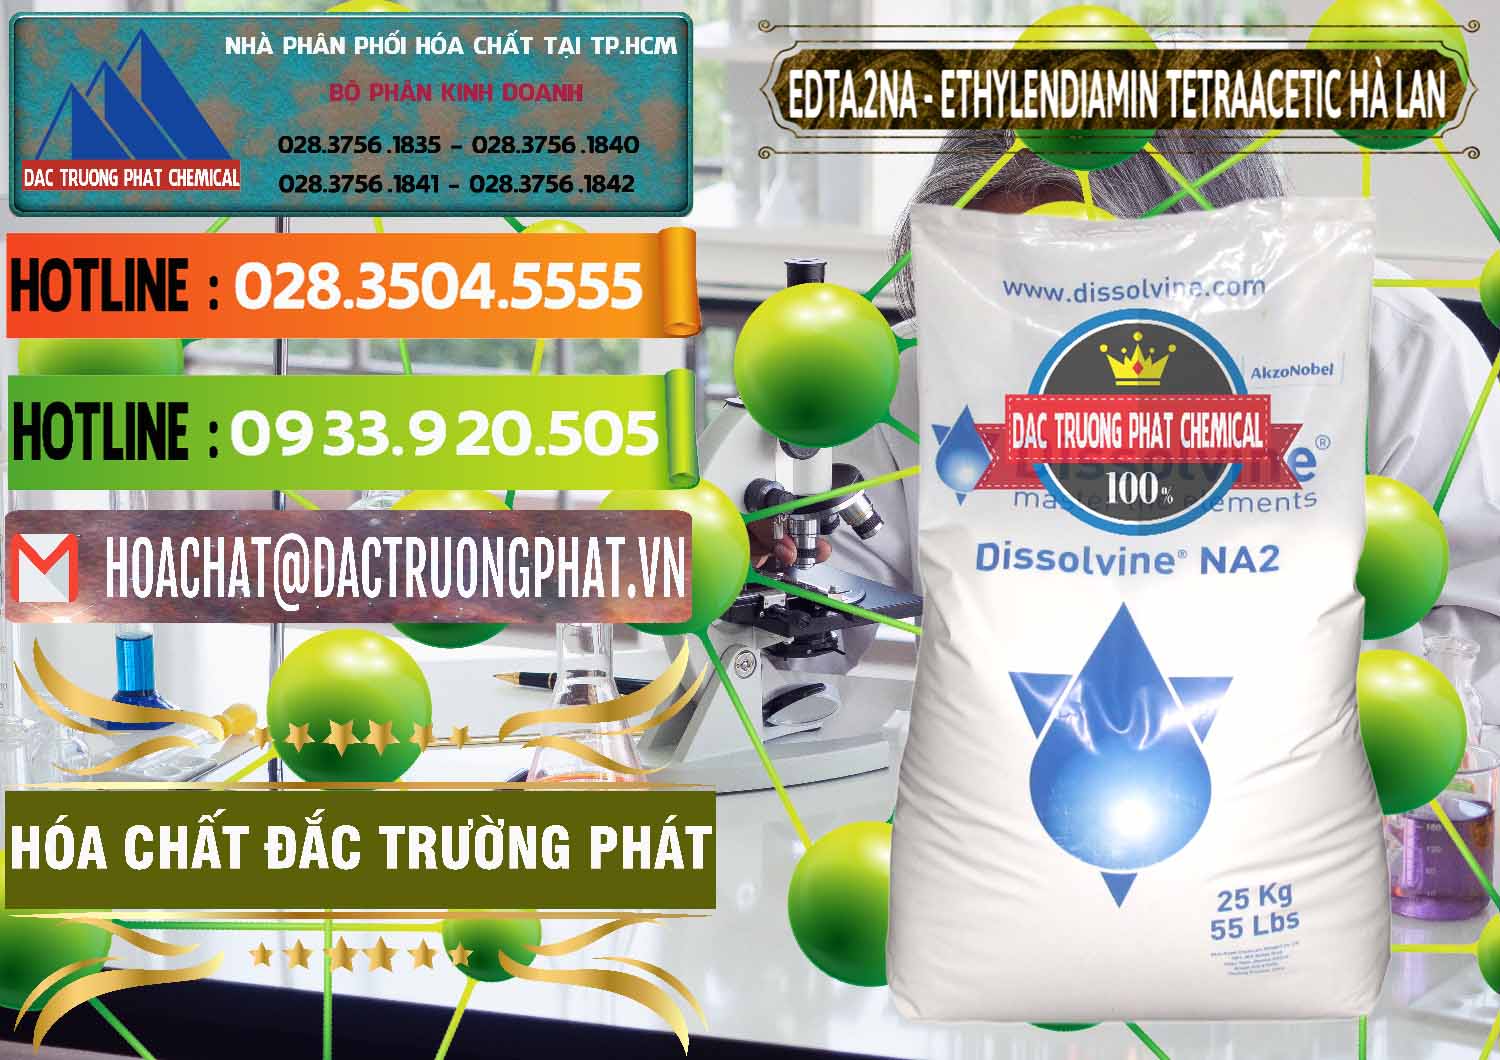 Công ty bán và phân phối EDTA.2NA - Ethylendiamin Tetraacetic Dissolvine Hà Lan Netherlands - 0064 - Kinh doanh - cung cấp hóa chất tại TP.HCM - cungcaphoachat.com.vn